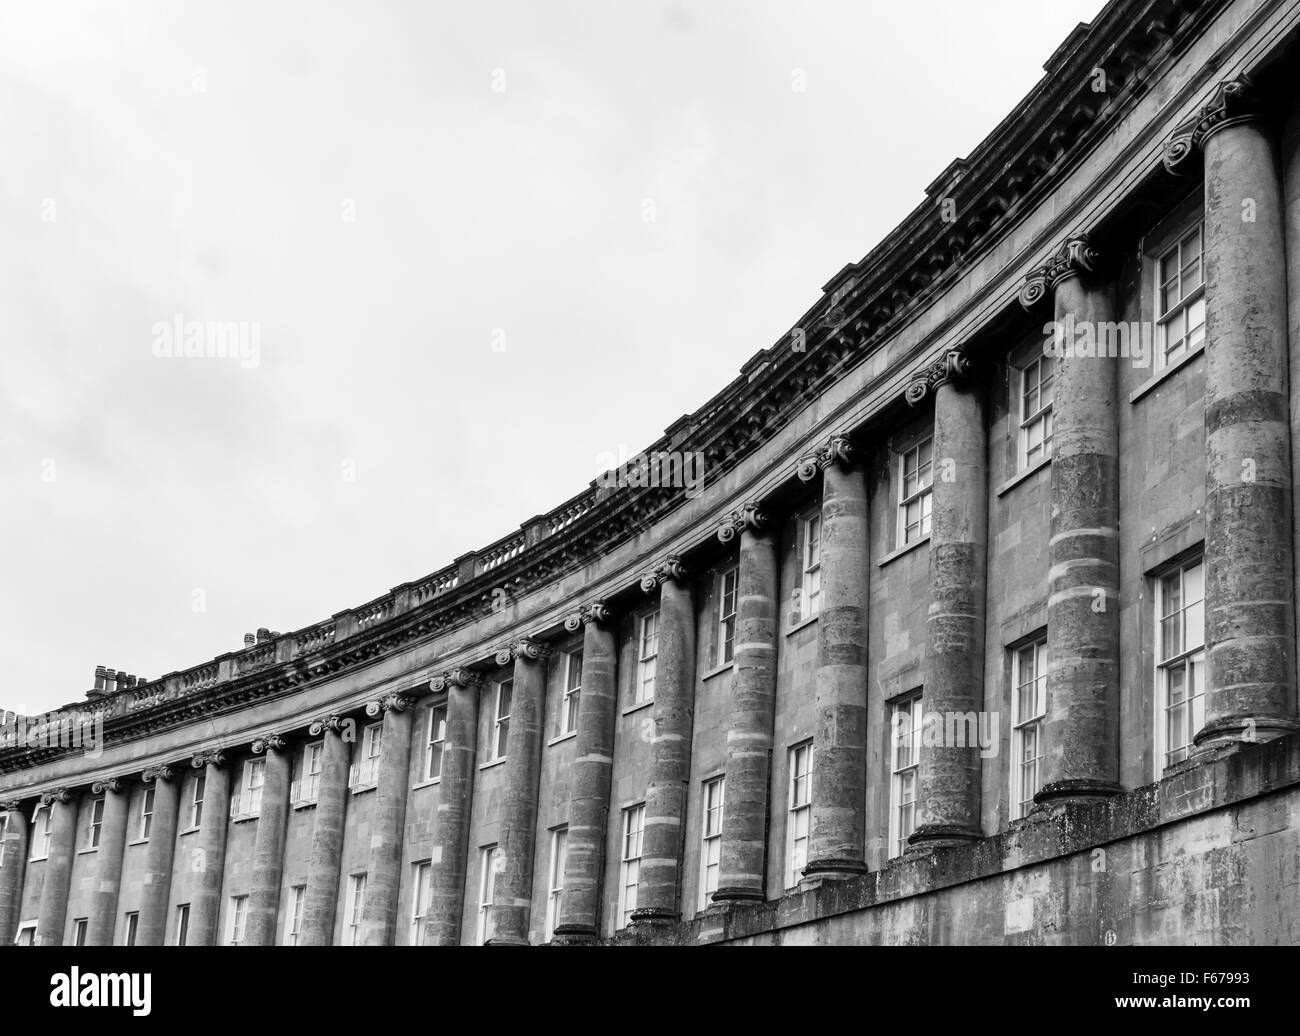 Royal Crescent, Bath en noir et blanc Banque D'Images